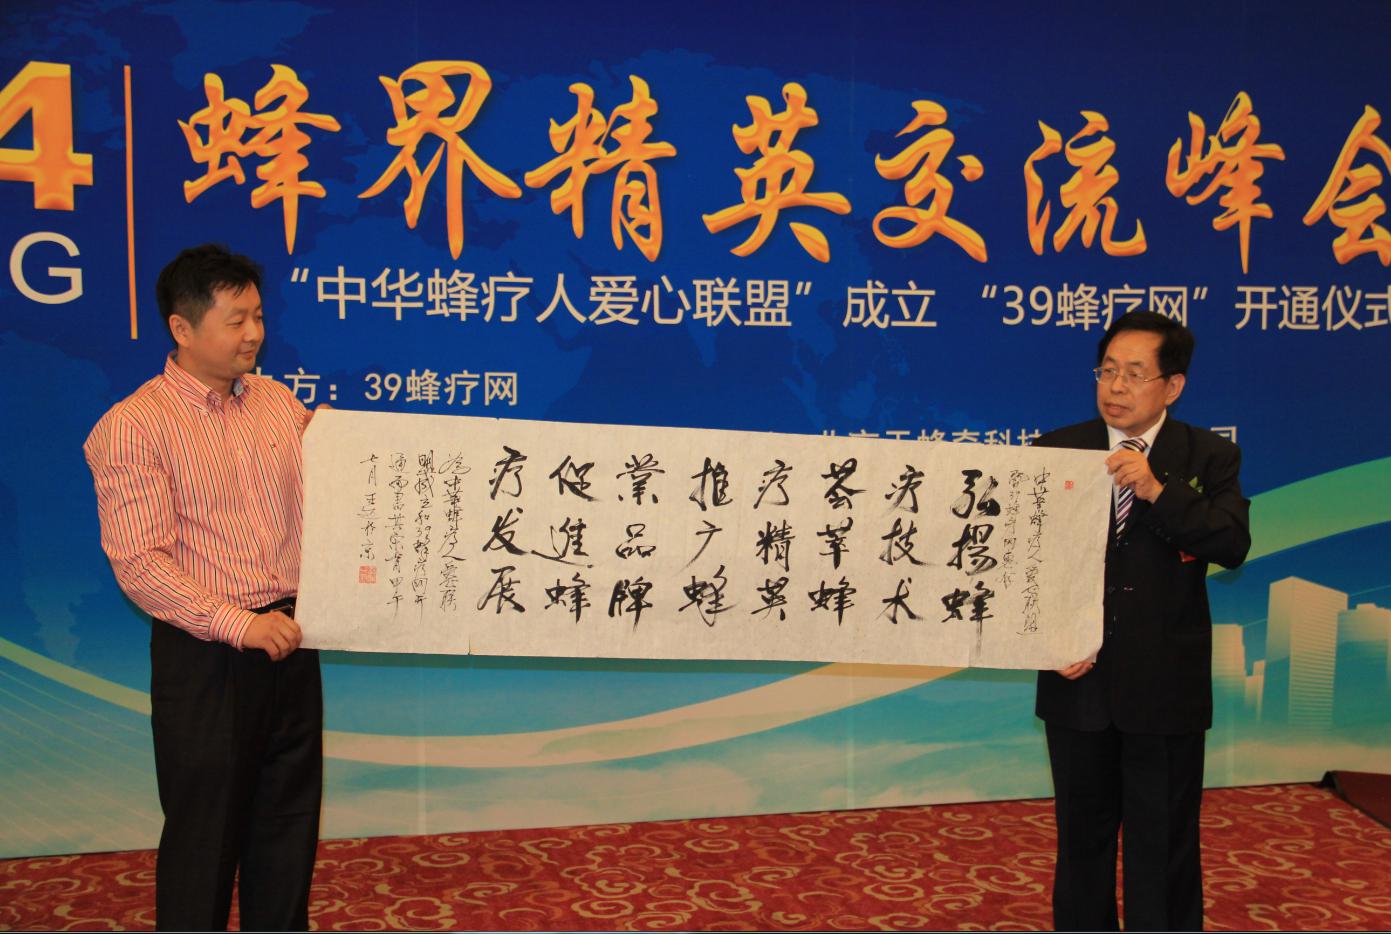 中国著名新闻战线记者——王迈教授现场为39蜂疗网张卿隆总编赠送墨宝恭贺